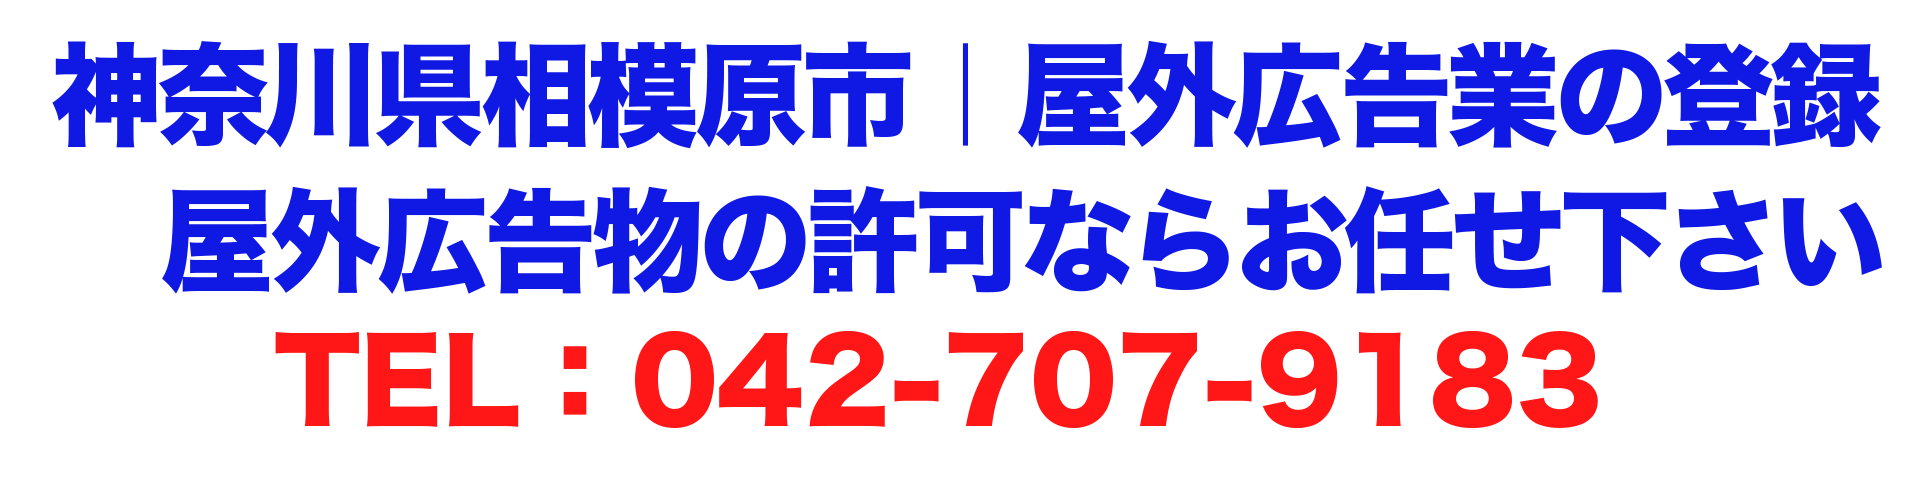 神奈川県相模原市｜屋外広告業の登録、屋外広告物の許可ならお任せ下さい